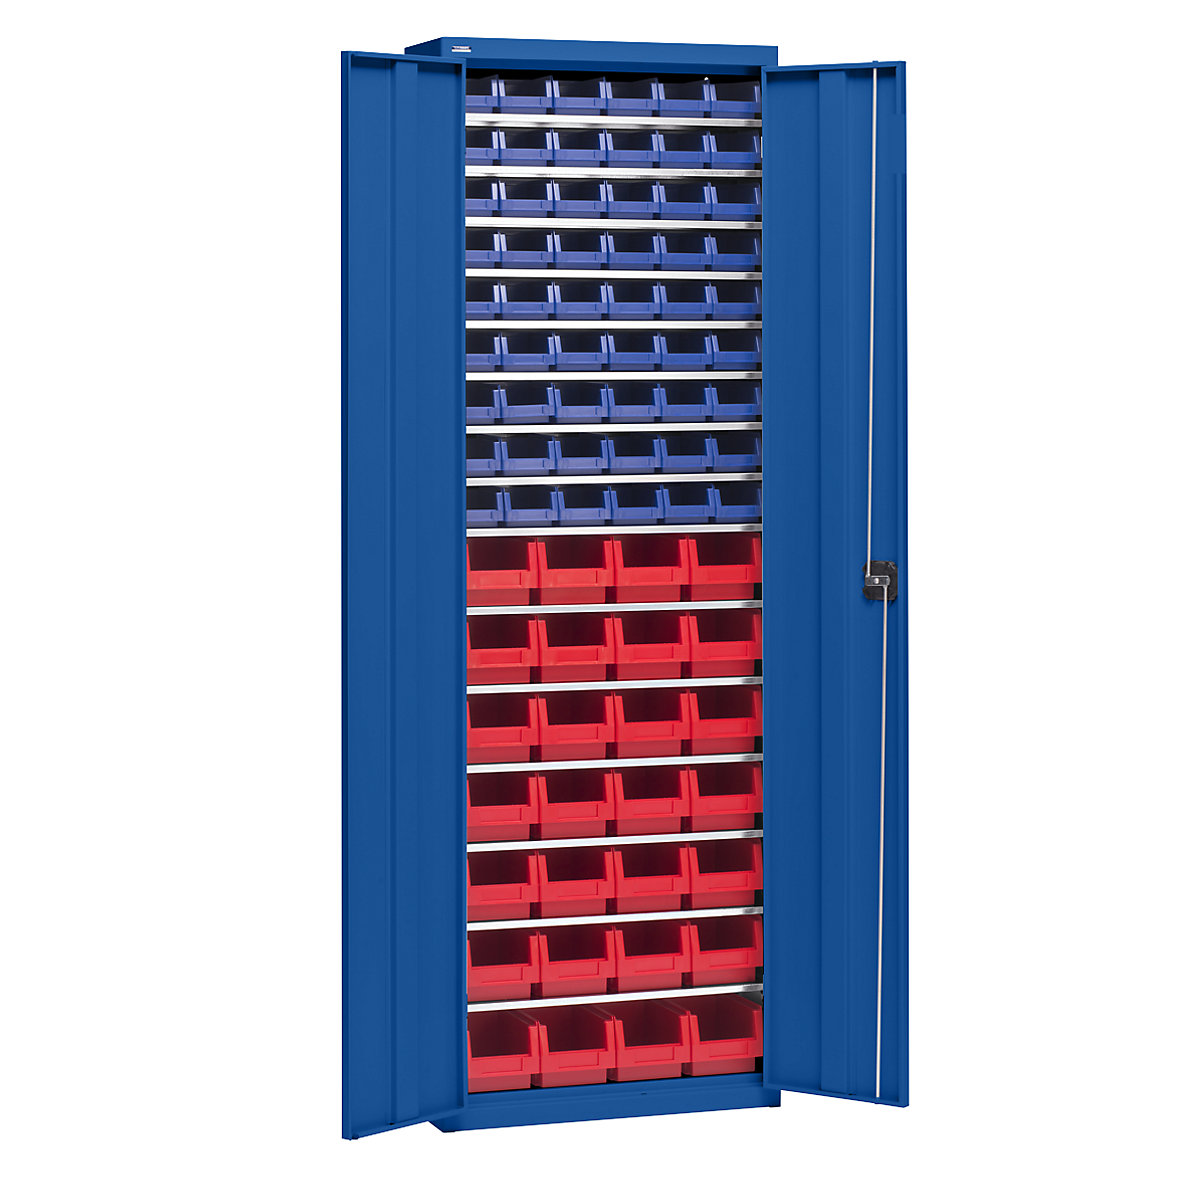 Materiaalkast met magazijnbakken – eurokraft pro, hoogte 2000 mm, 15 legborden, gentiaanblauw-5